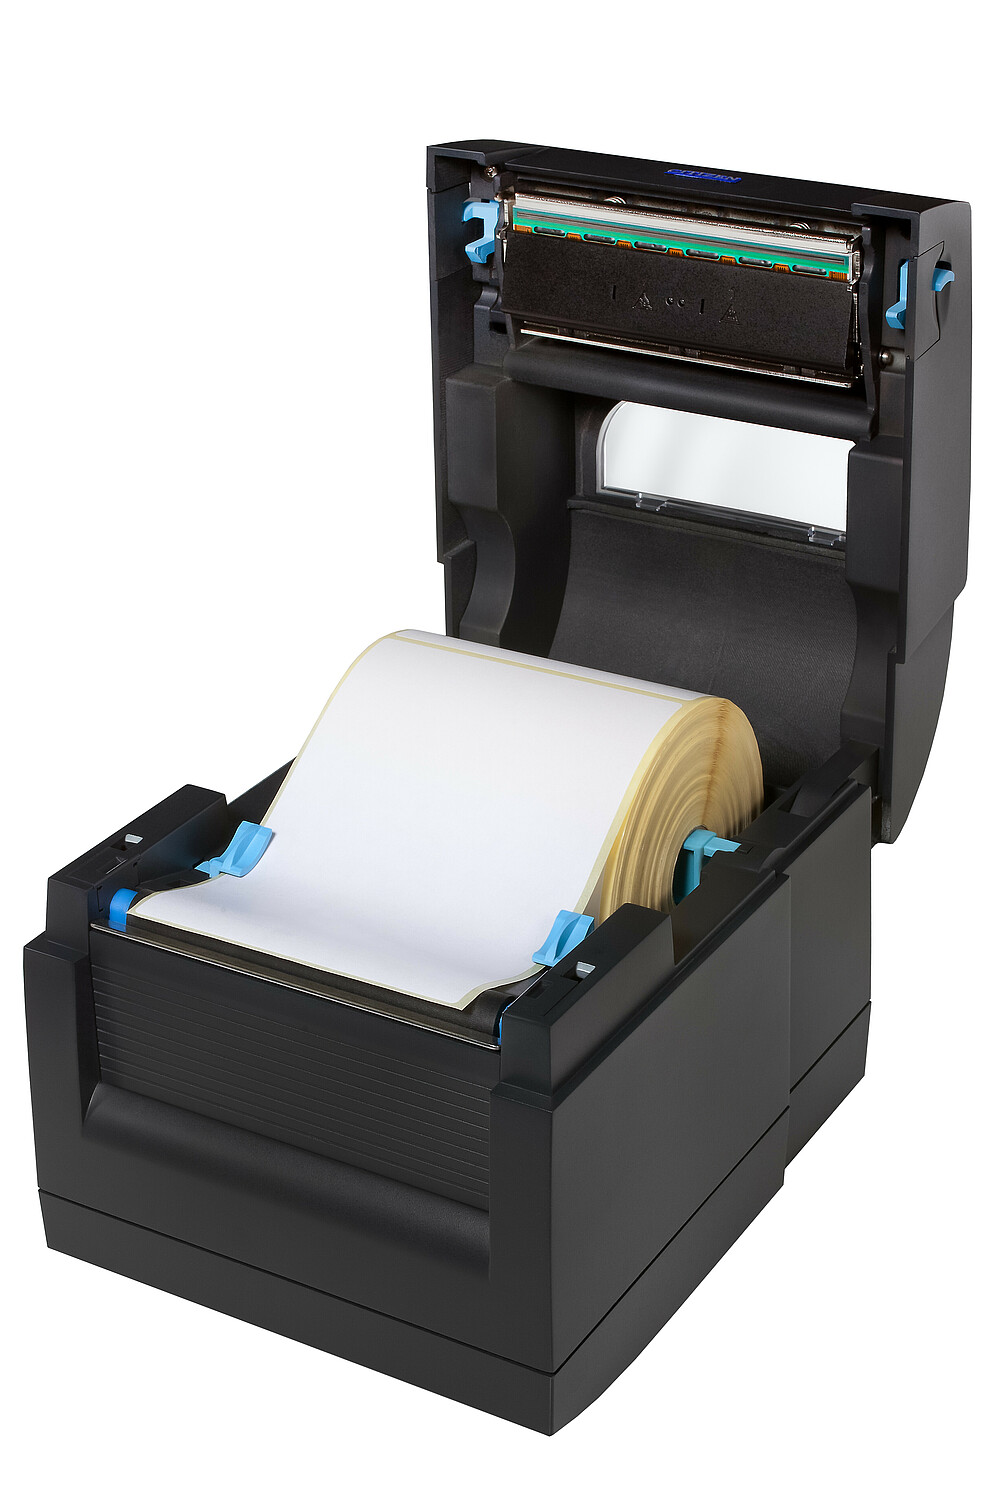 Citizen Label Printer CL-S300 Open